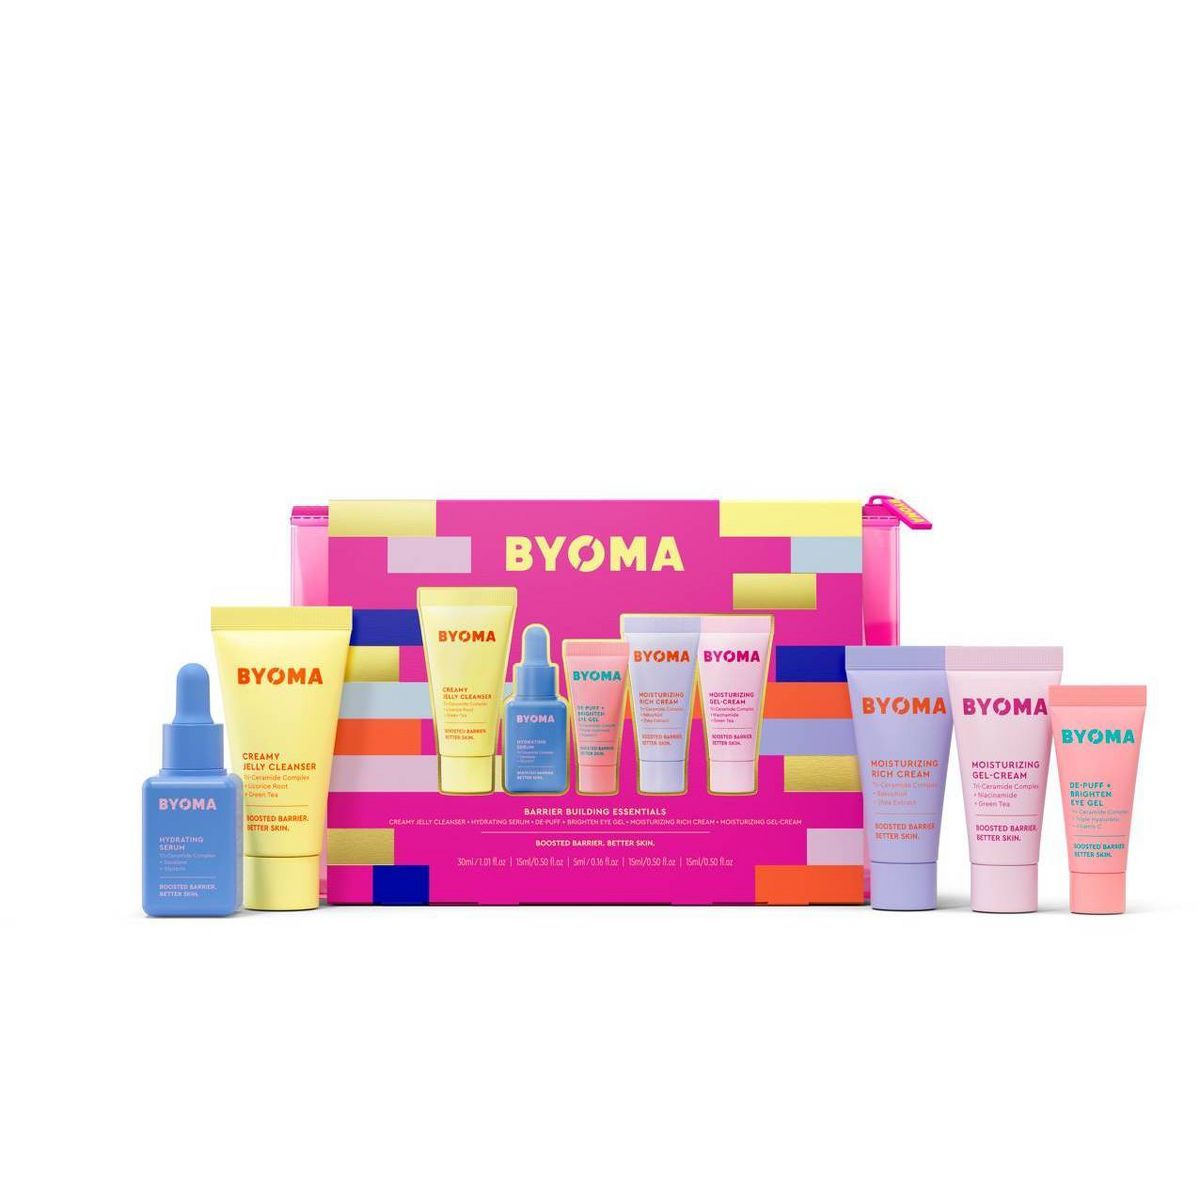 BYOMA Skincare Gift Set and Bag - 0.45lbs/5ct | Target